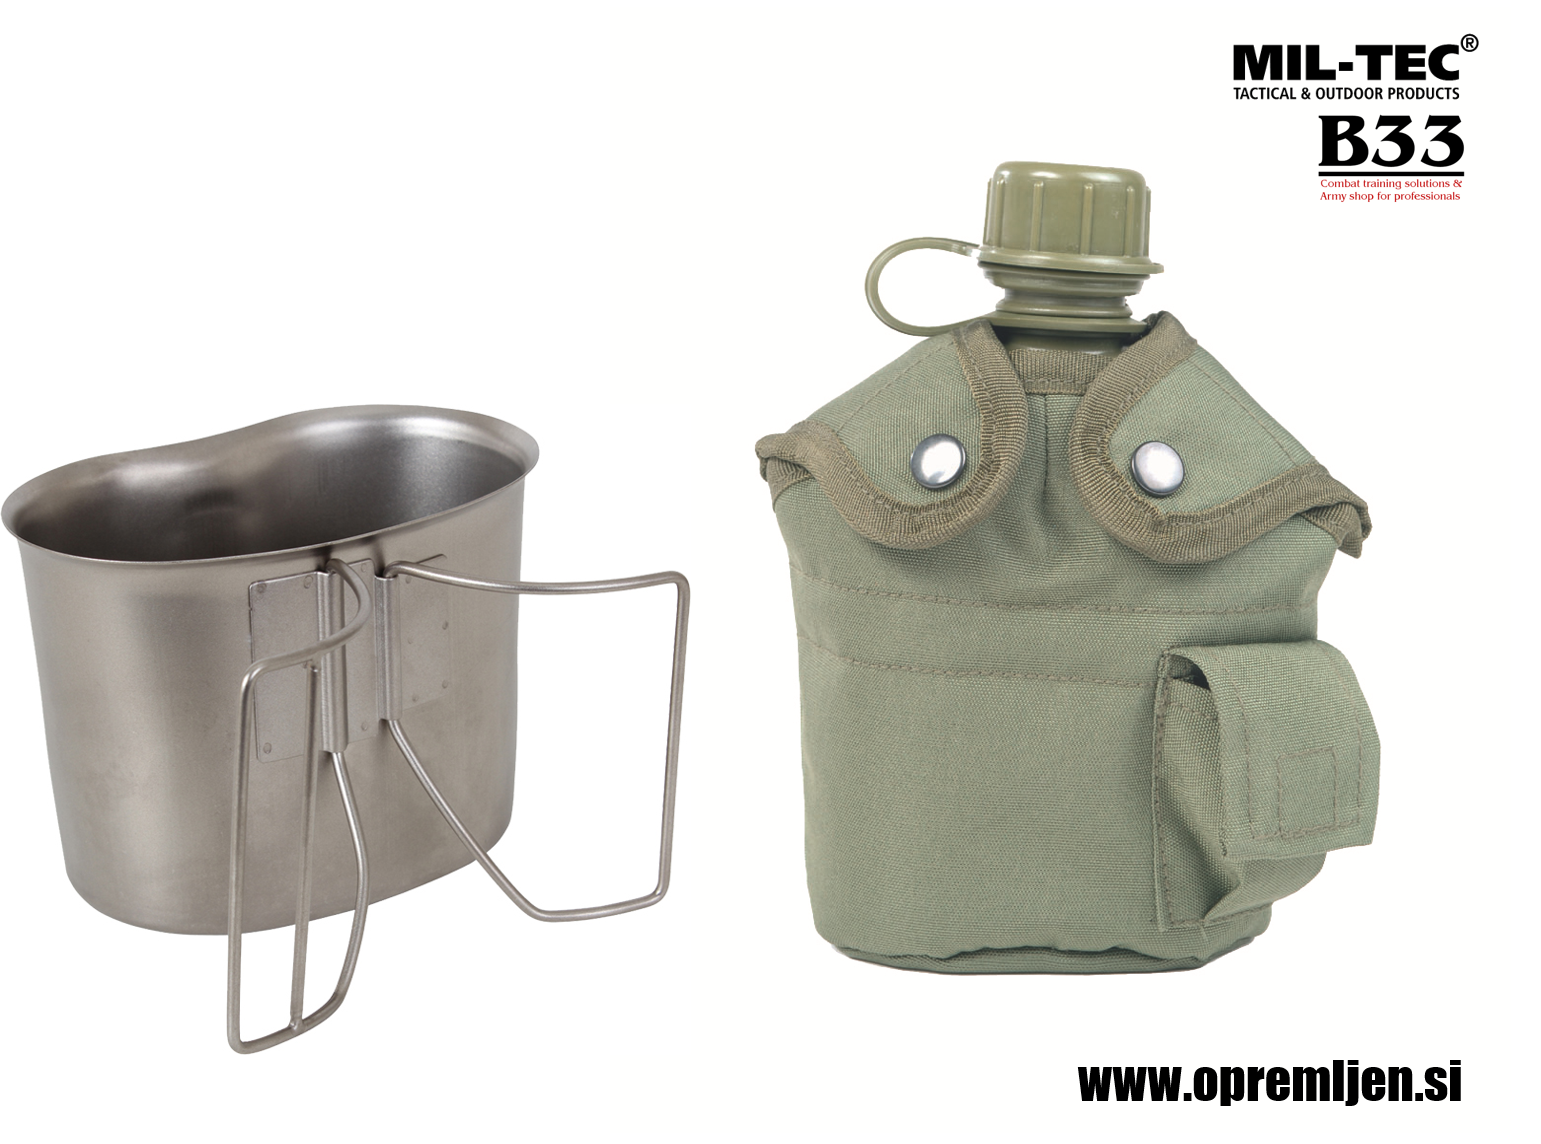 B33 army shop - ALICE vojaška termo torbica z vojaško čutaro in lončkom MILTEC by B33 army shop at www.opremljen.si trgovina z vojaško opremo, vojaška trgovina